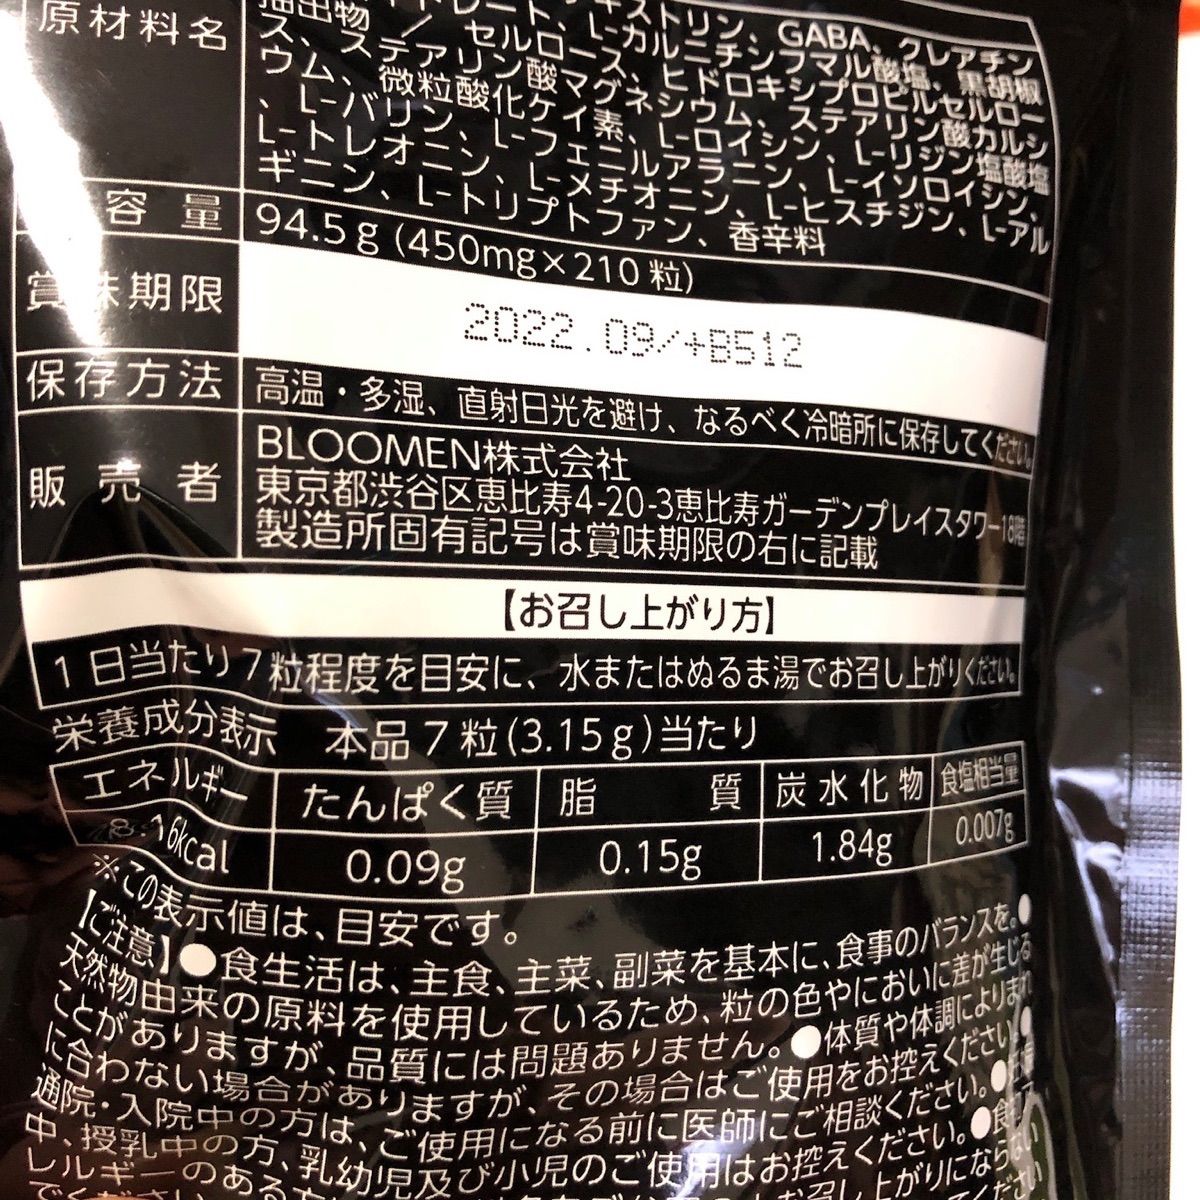 390円 【即発送可能】 GACKT Badger Evolving Body Balm サプリメント